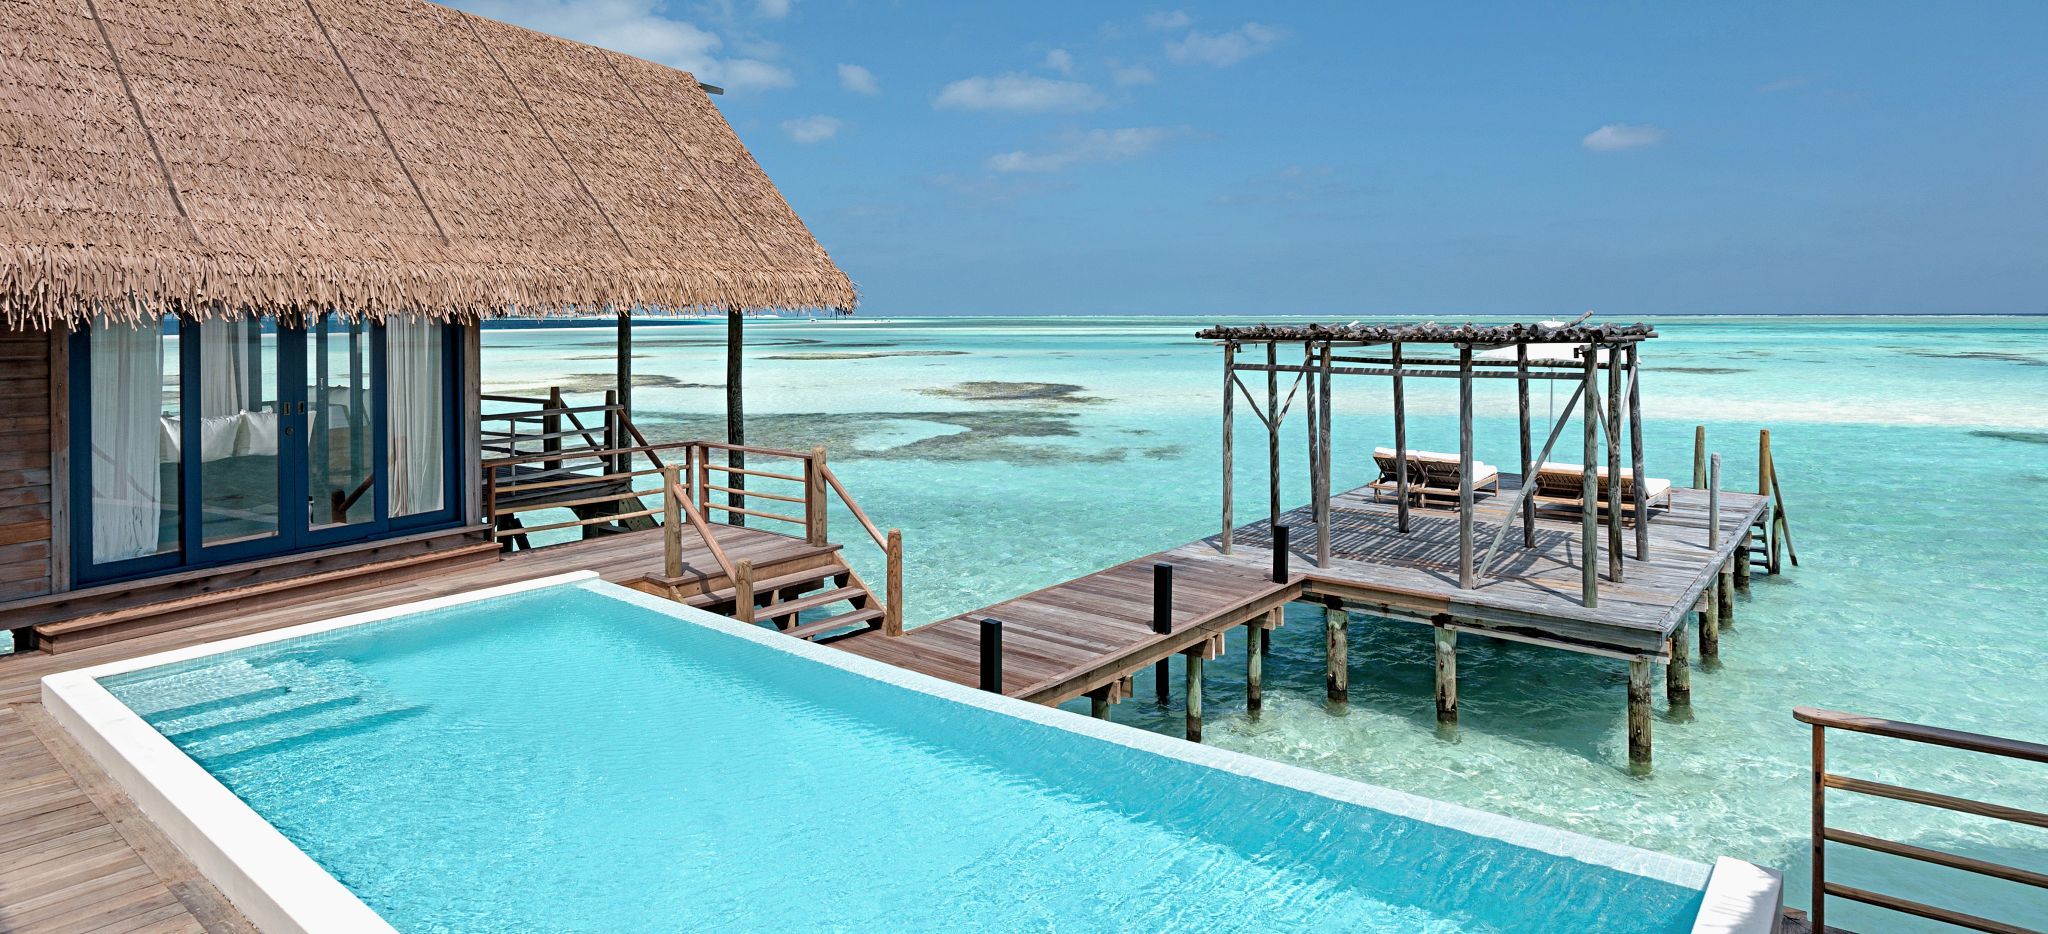 Terrasse und Pool einer Wasservilla im Hotel COMO Cocoa Island, Malediven